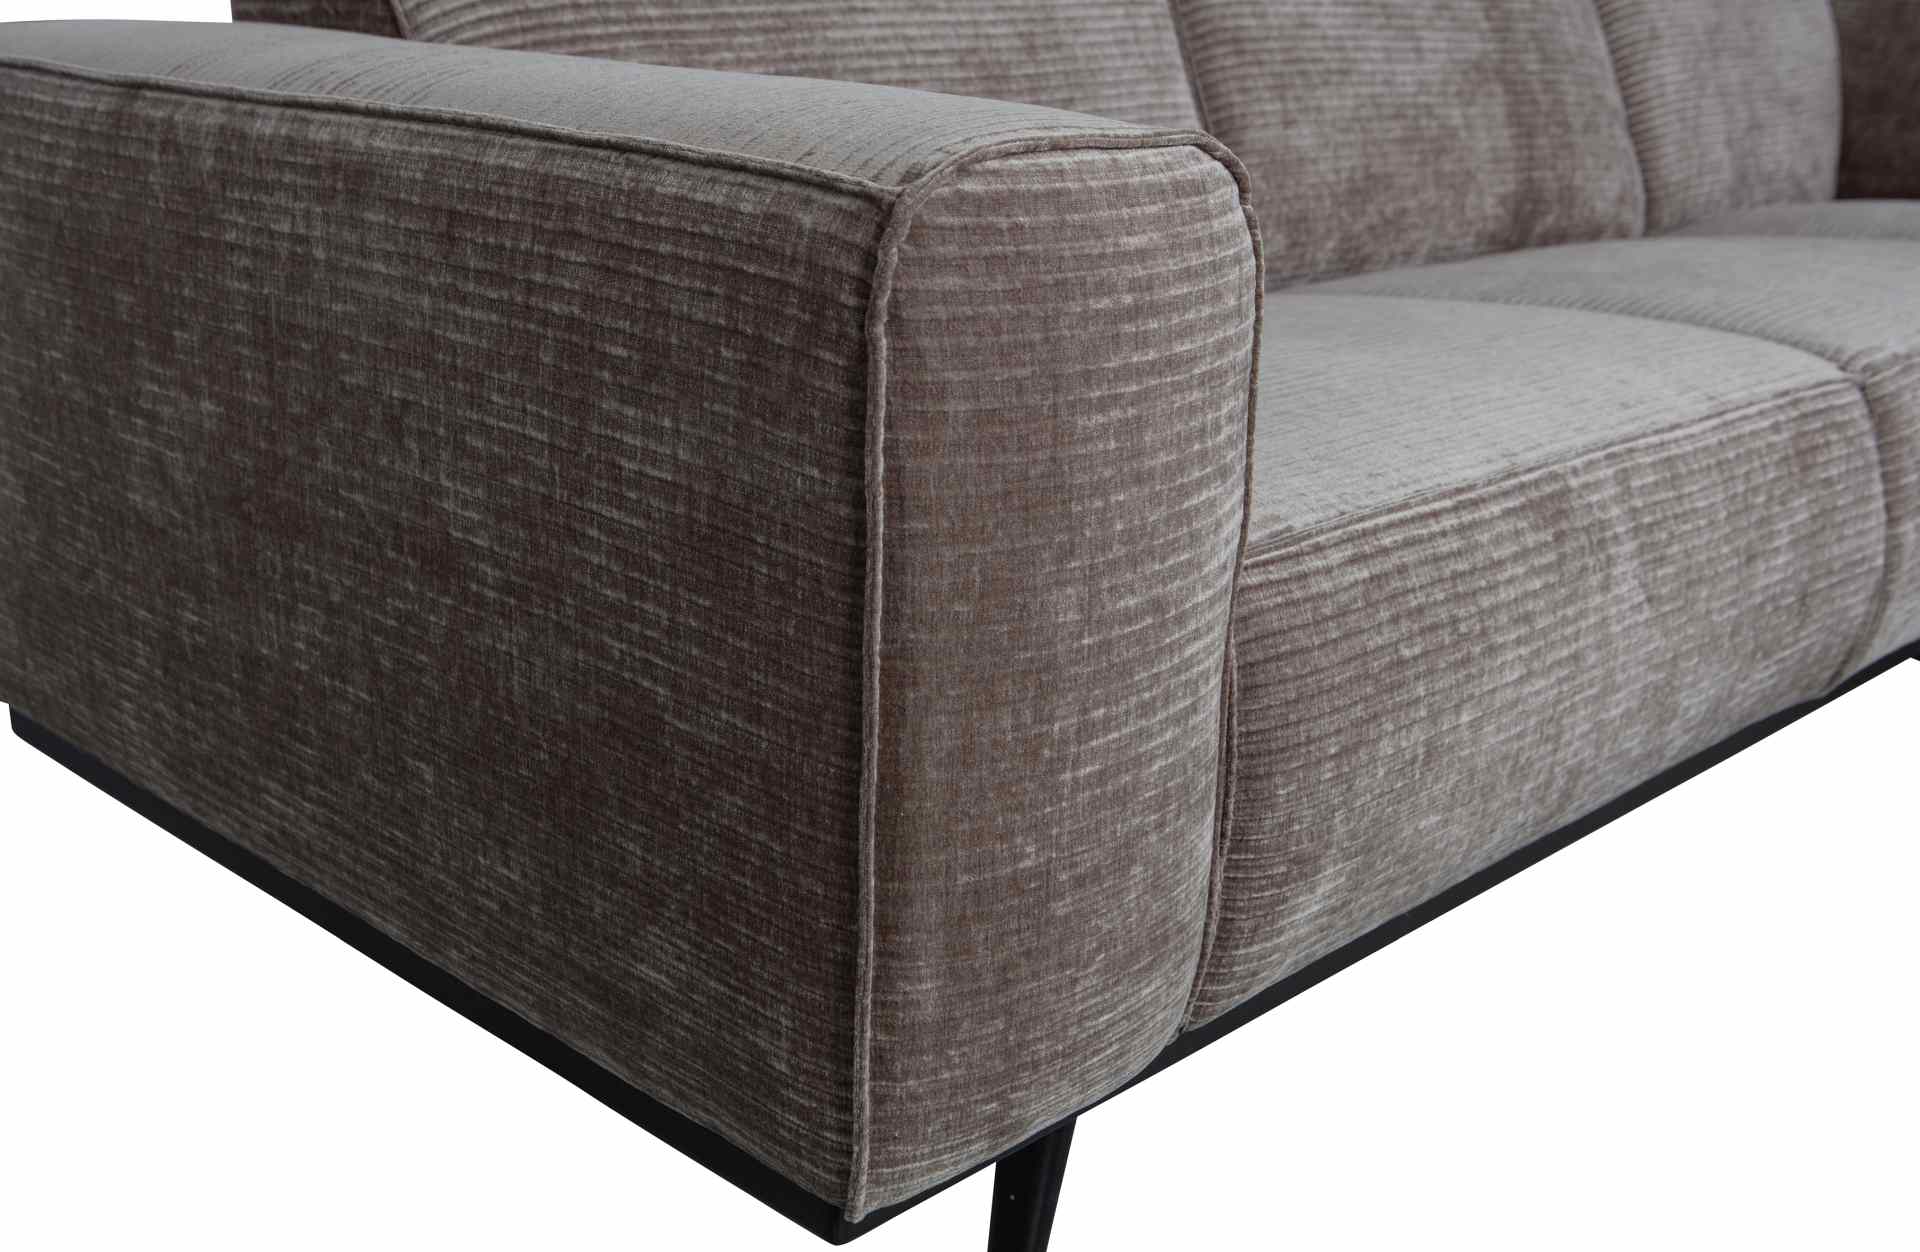 Das Ecksofa Statement überzeugt mit seinem modernen Design. Gefertigt wurde es aus gewebten Jacquard, welches einen Taupe Farbton besitzen. Das Gestell ist aus Birkenholz und hat eine schwarze Farbe. Das Sofa hat eine Breite von 274 cm.